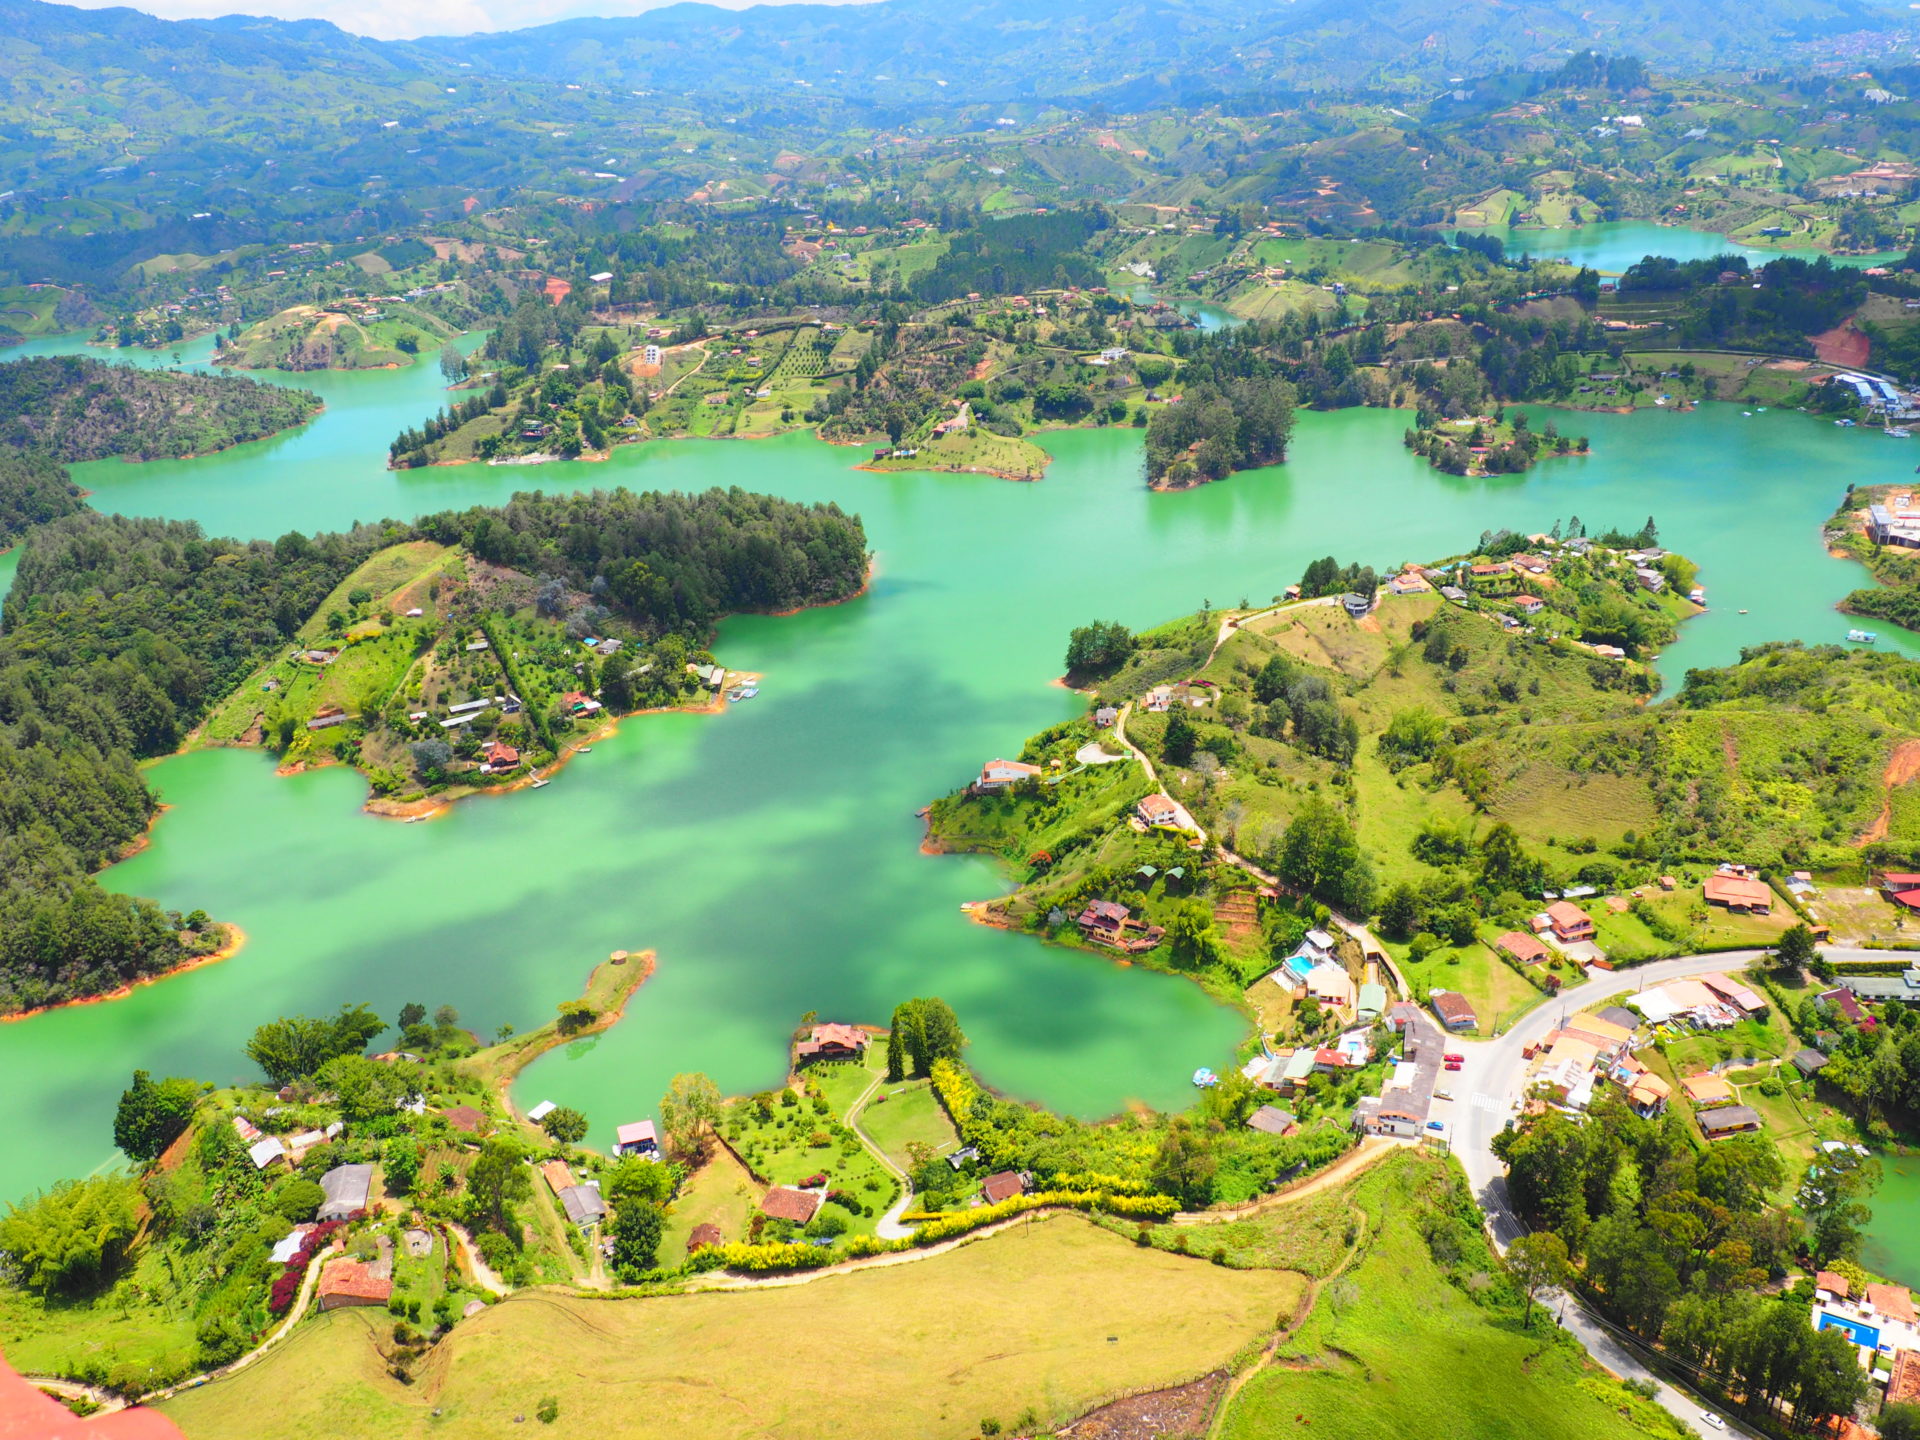 Guatape lake in Medellin